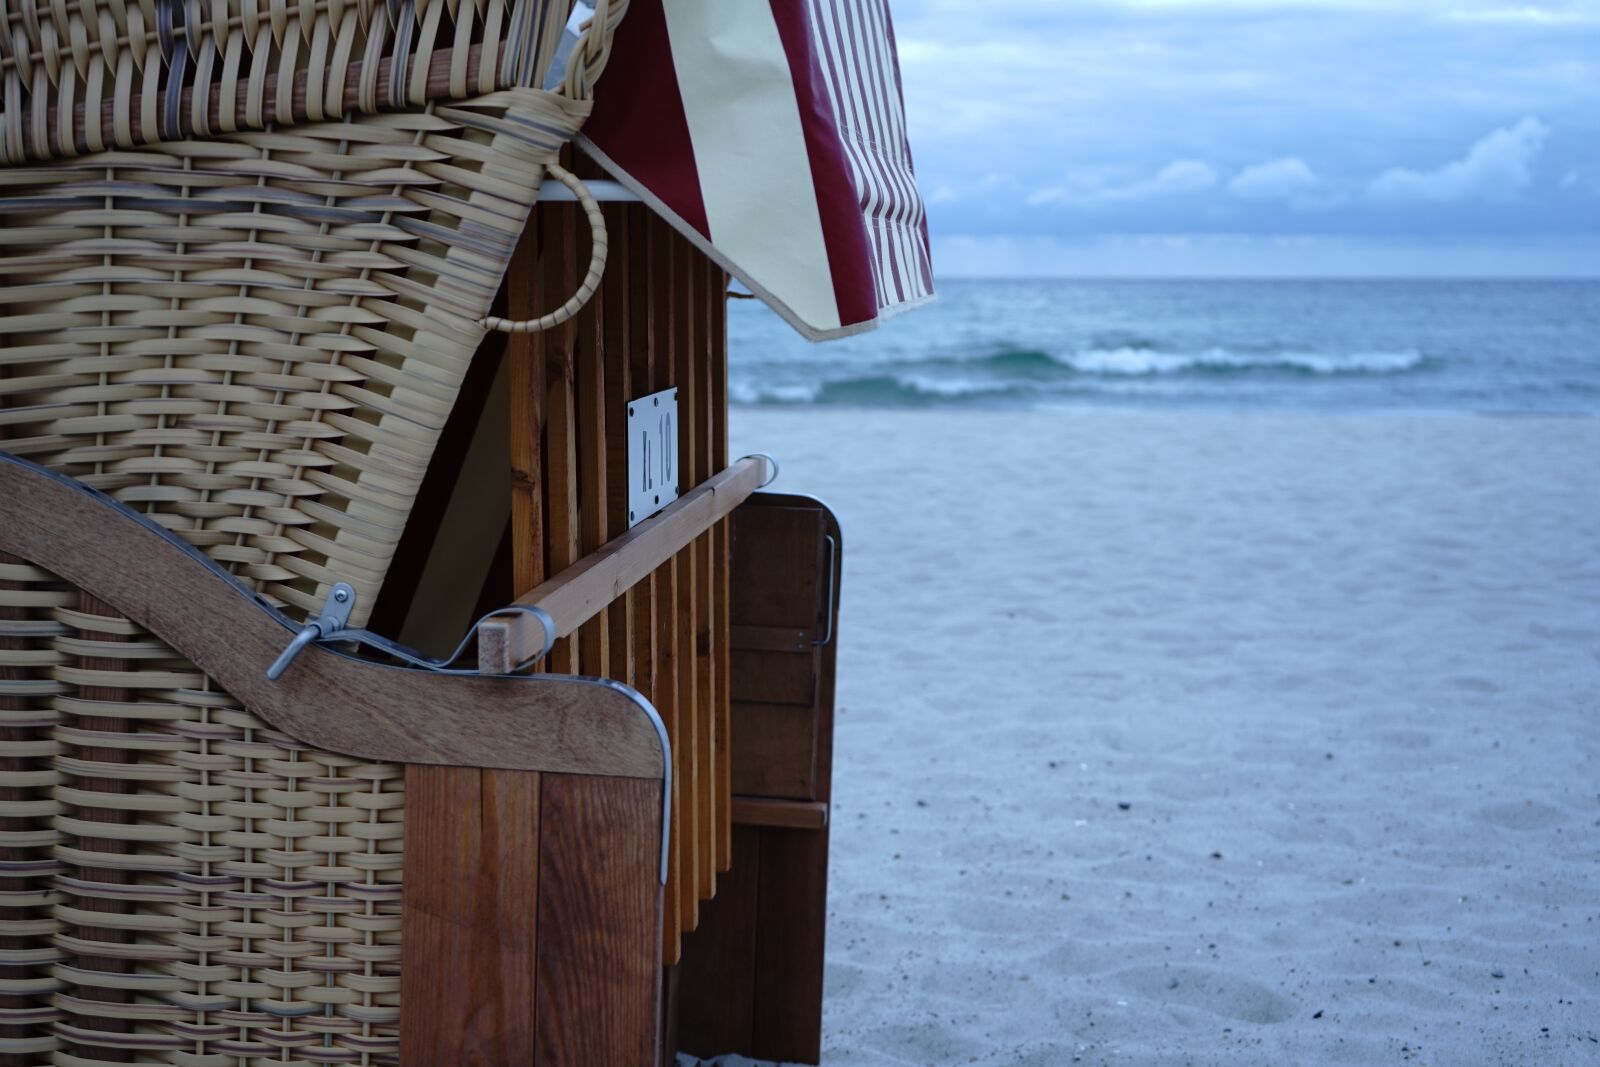 Sony a7 sample photo. Beach chair, sea, sand photography